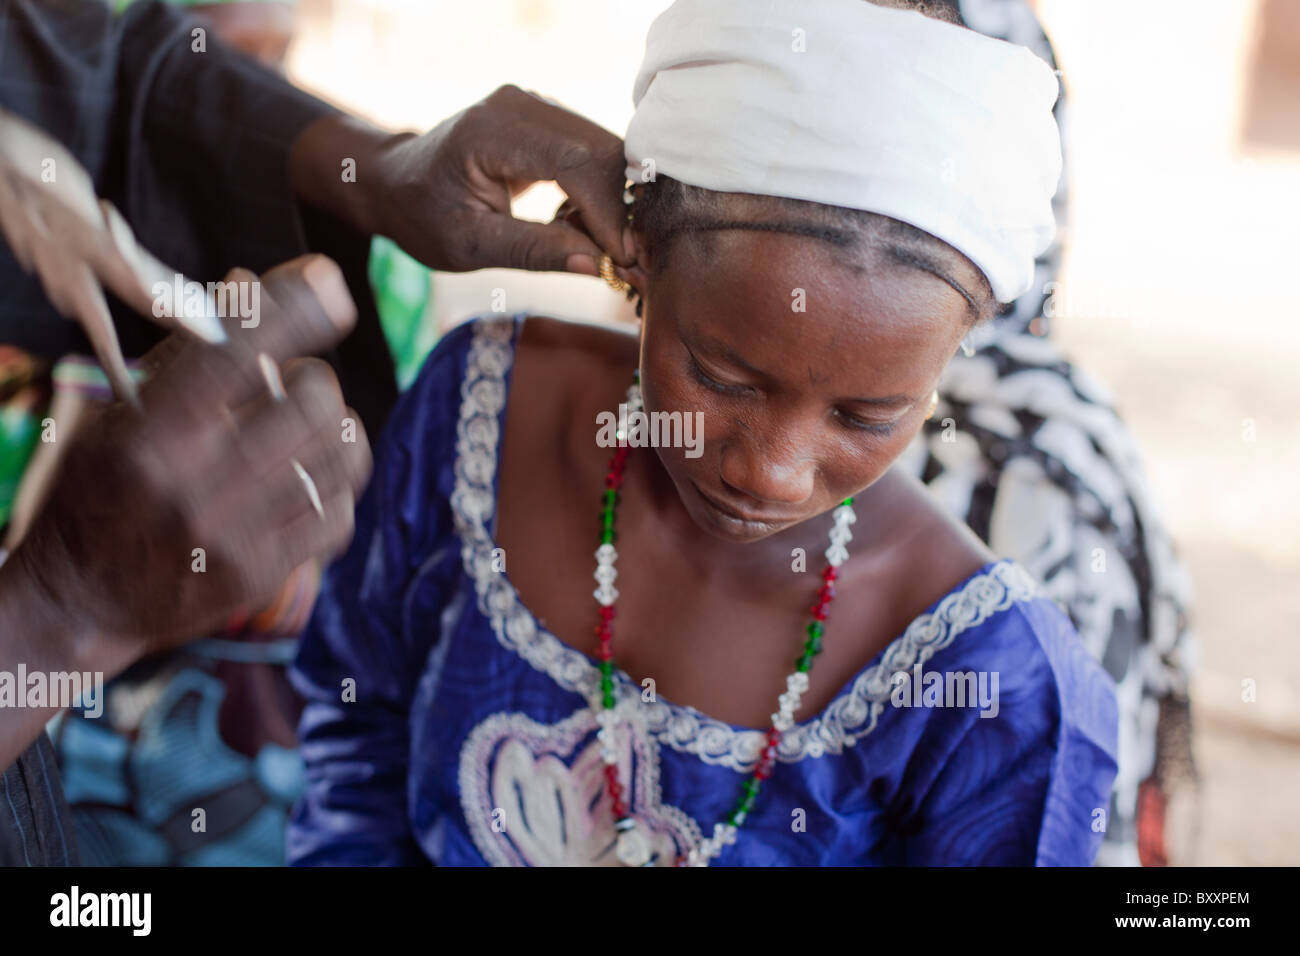 Nach Erhalt der goldene Ohrringe von ihrem Vater, besucht eine junge Frau den Schmied in Djibo, Burkina Faso für die "Montage". Stockfoto